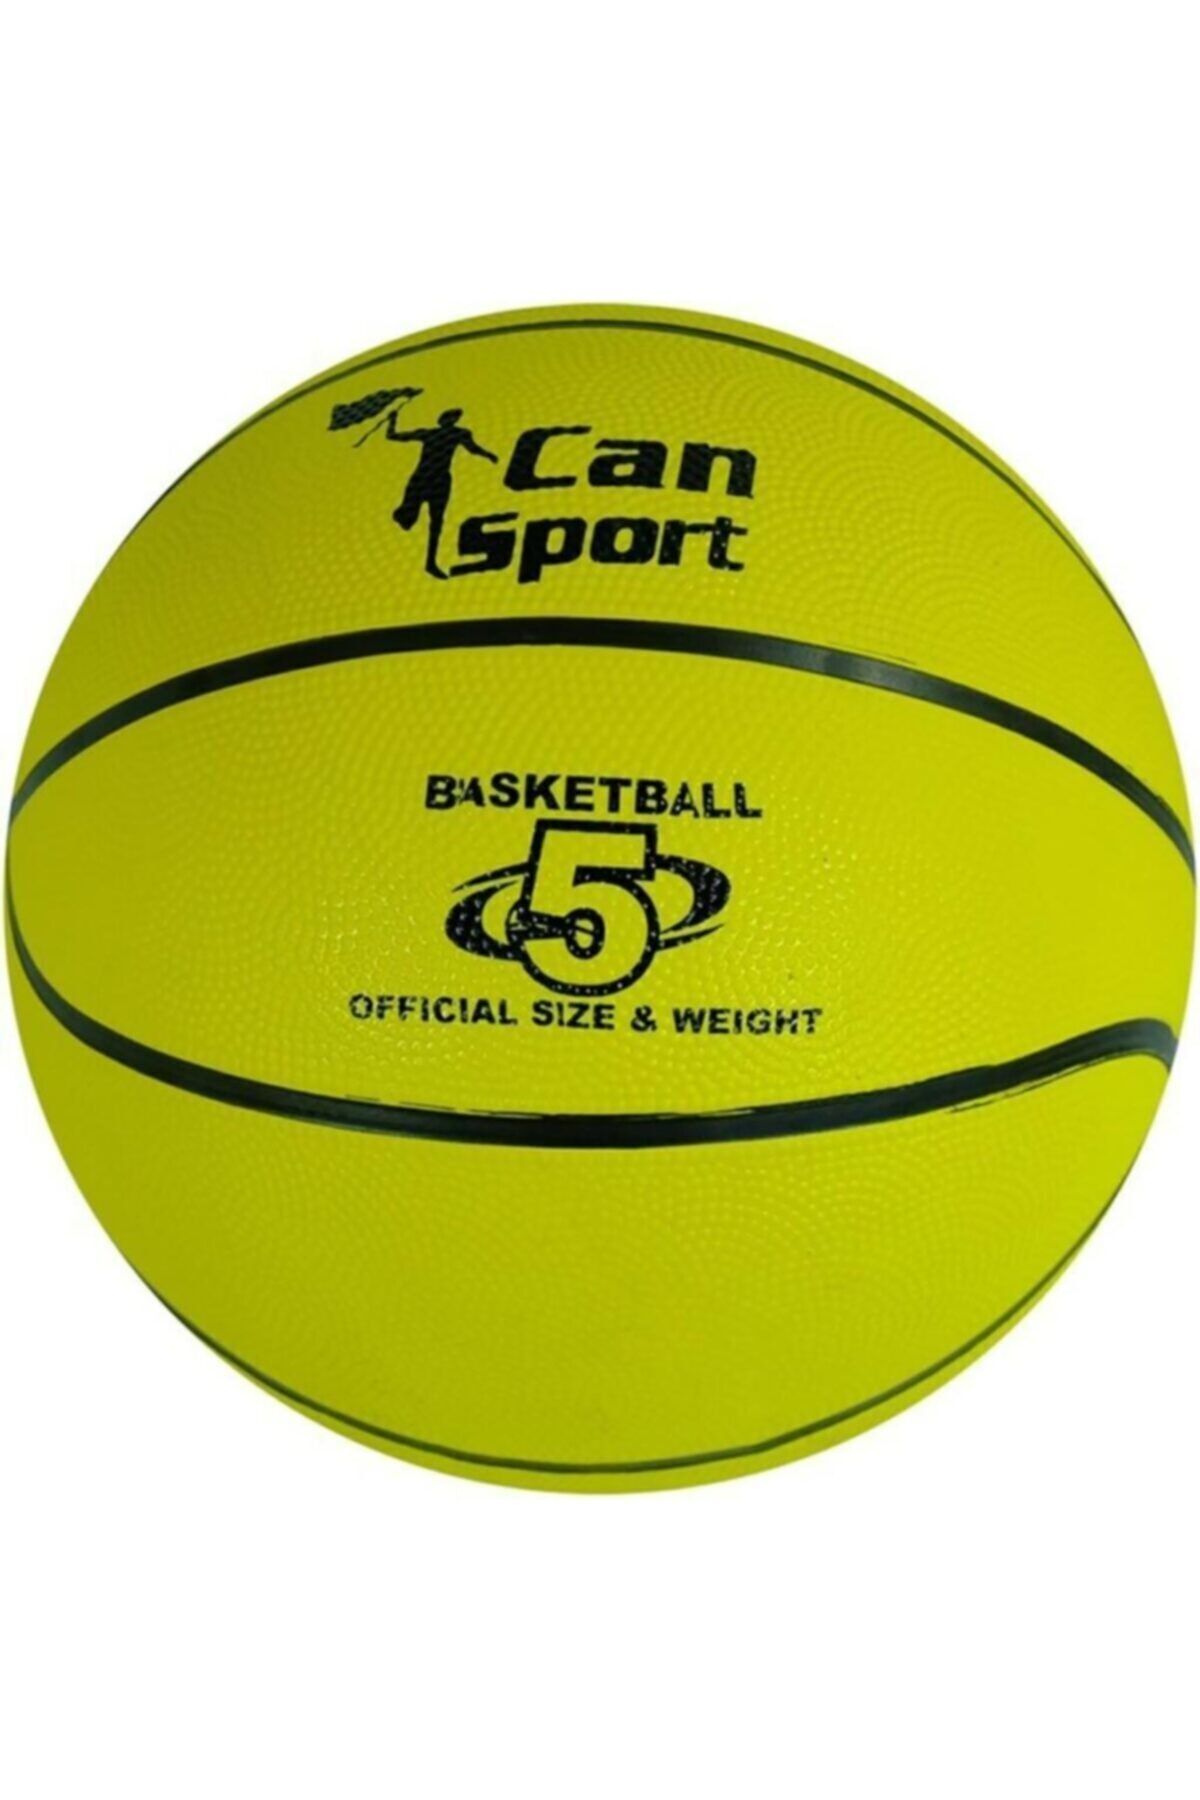 abnturk Kauçuk Malzeme 5 Numara Basketbol Topu Standart Boy Iç Ve Dış Mekanda Kullanıma Uygun